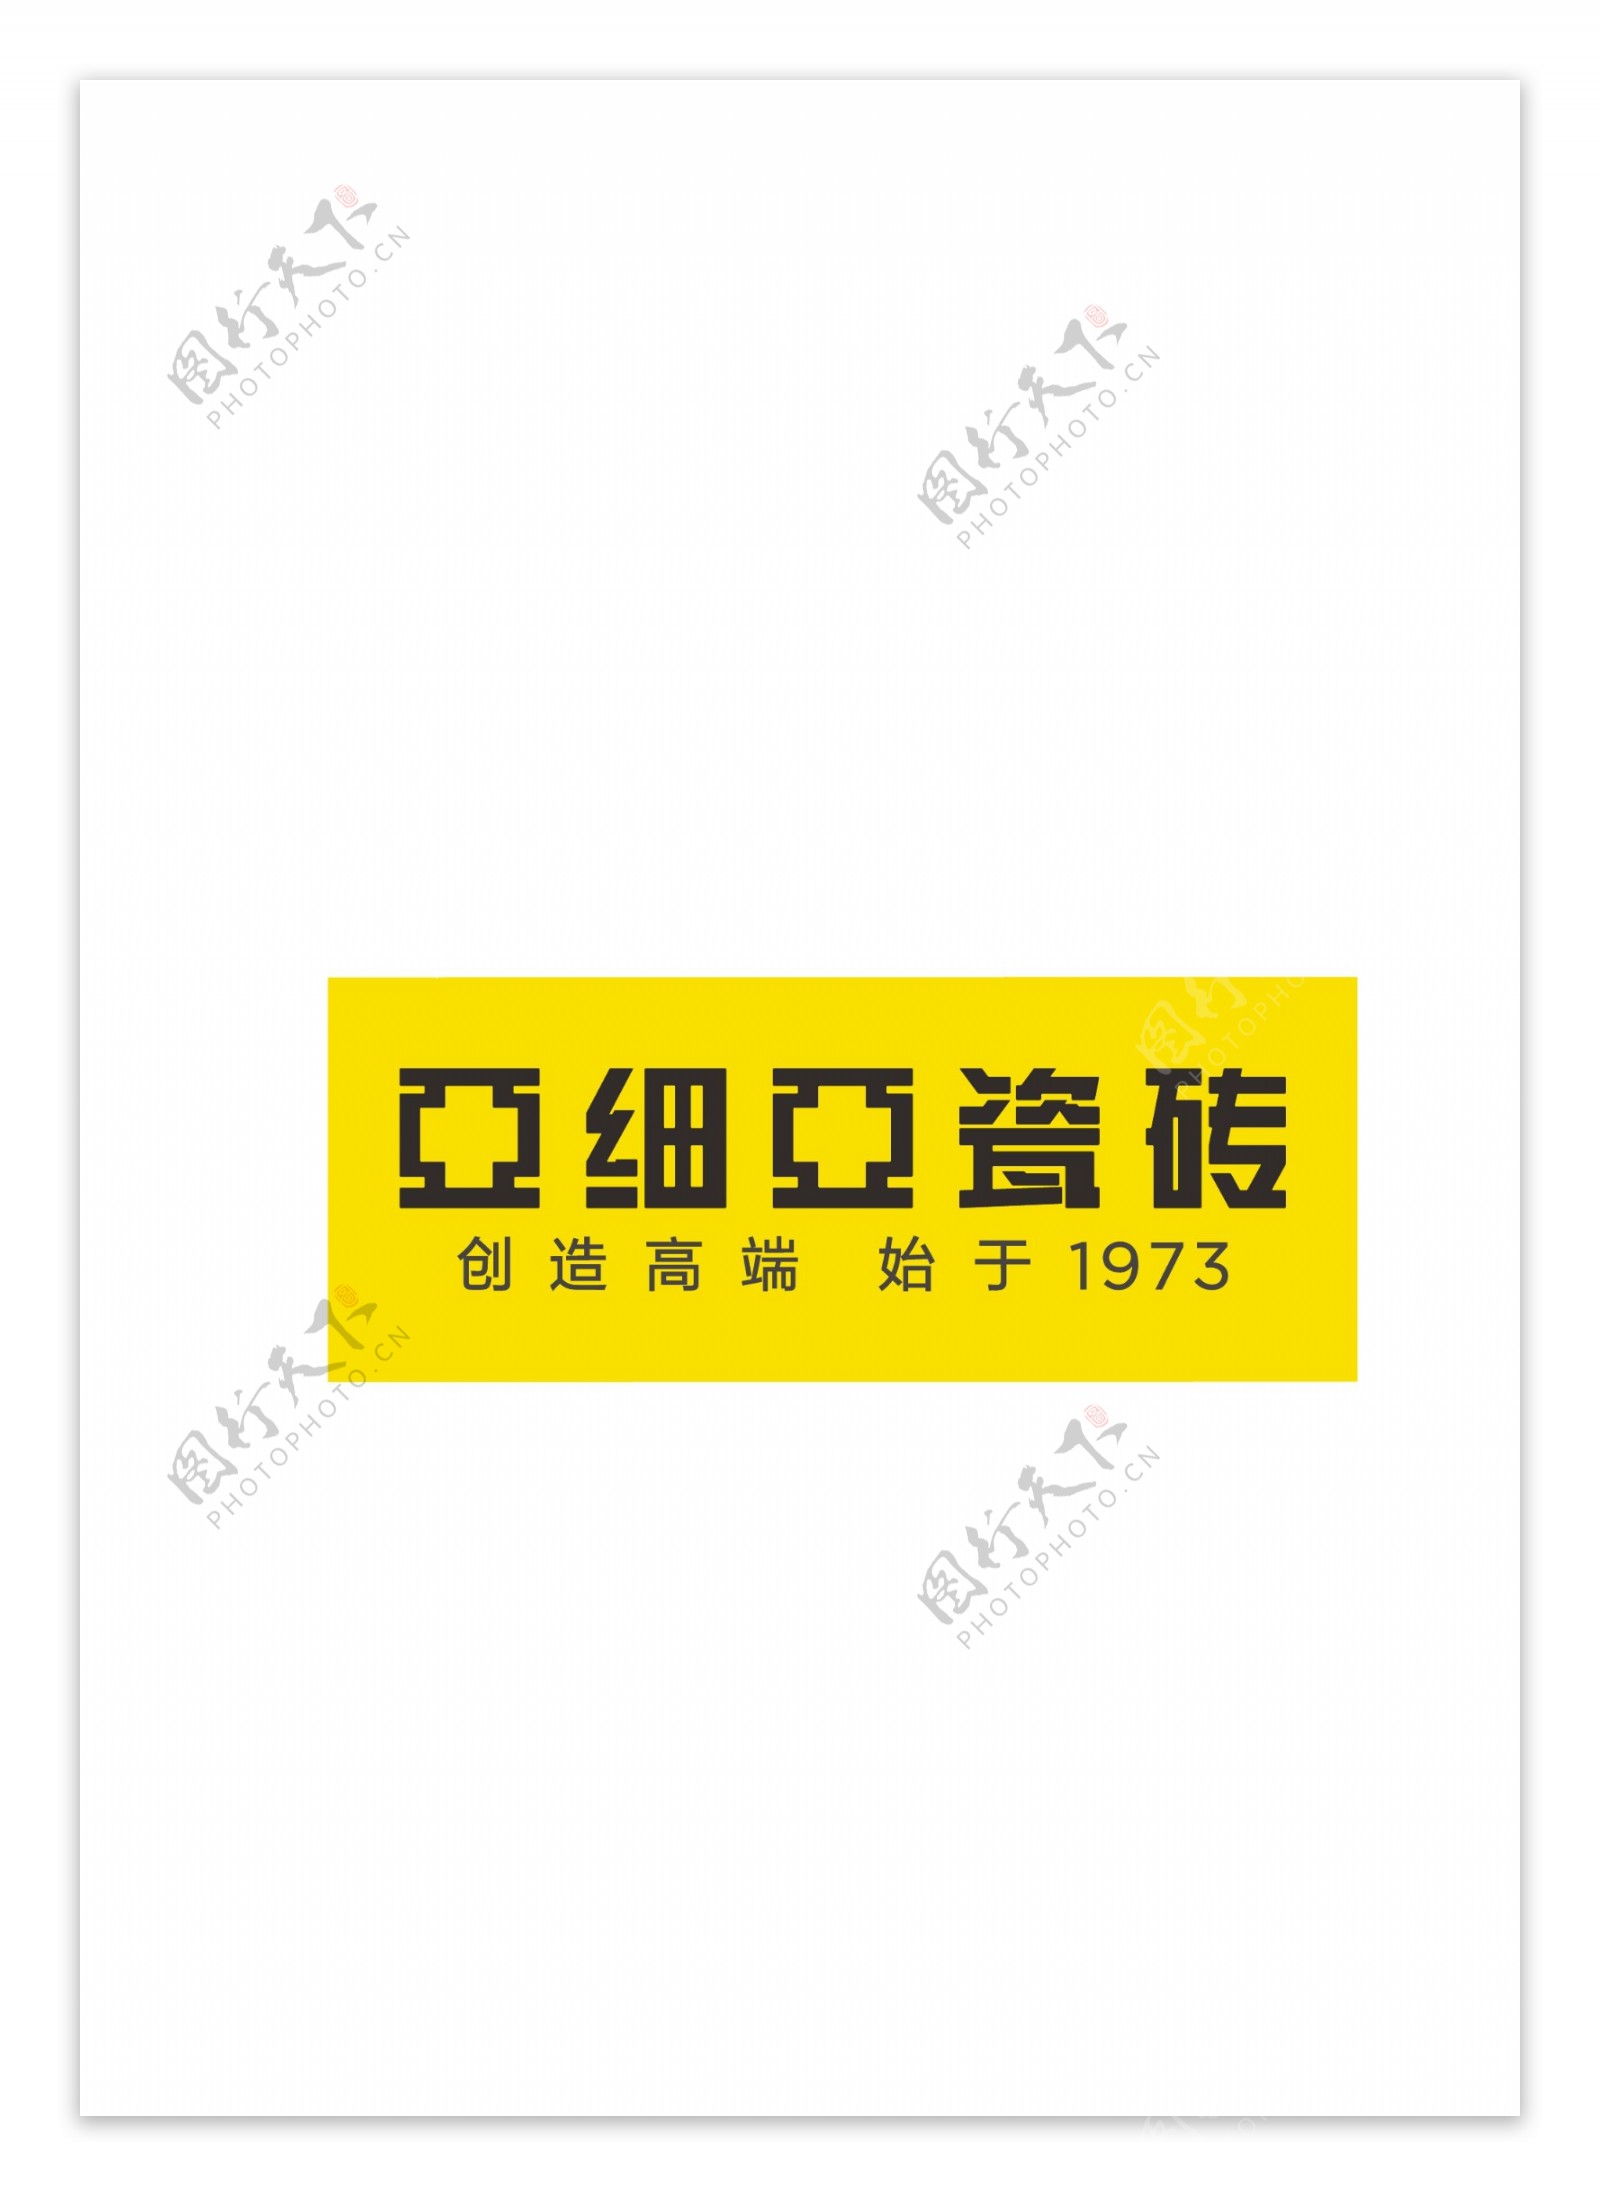 亚细亚瓷砖logo图片